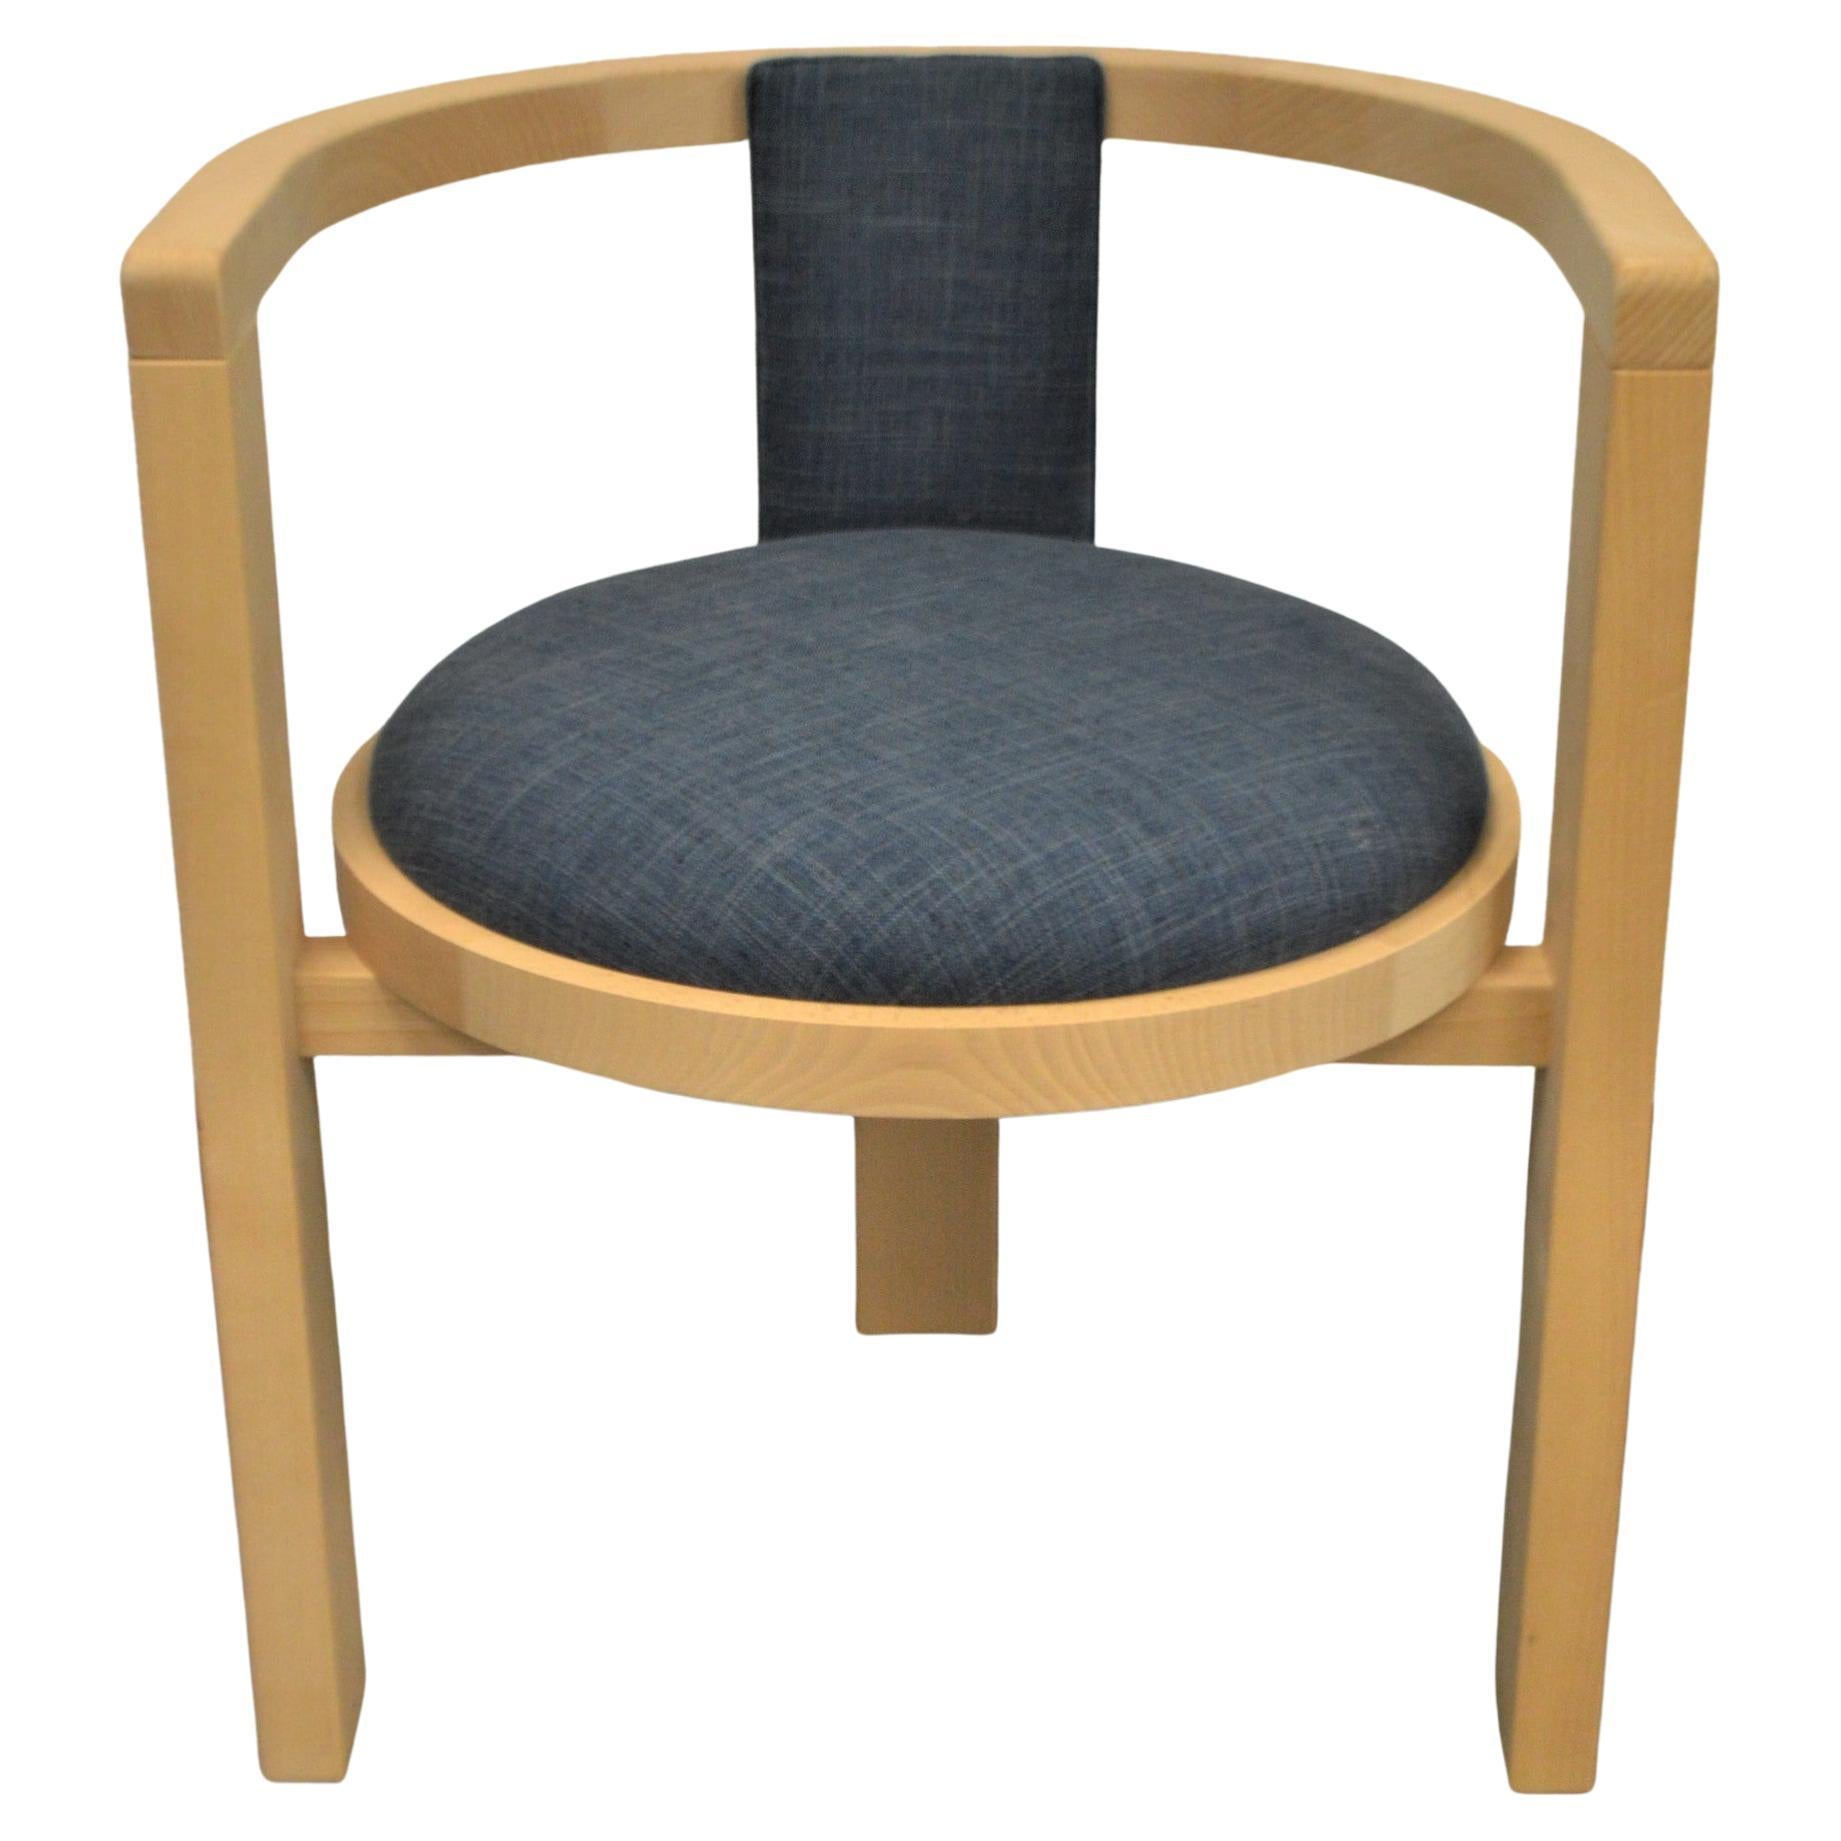 Chaise de salle à manger ou d'appoint moderne en bois massif, siège rembourré pour une finition personnalisée.